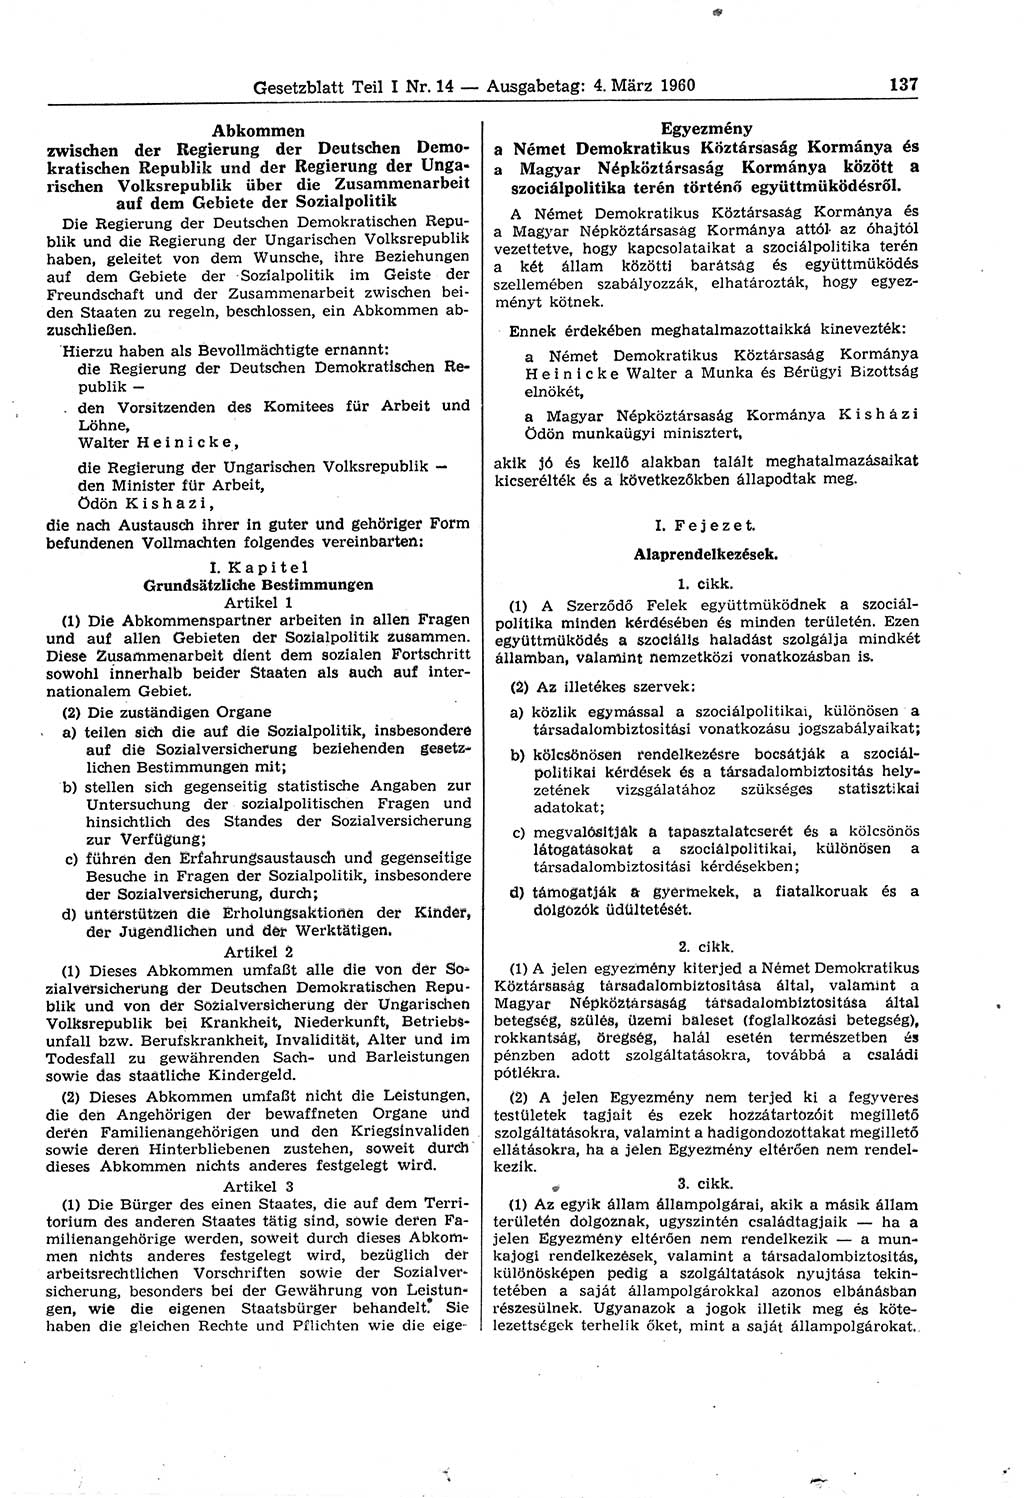 Gesetzblatt (GBl.) der Deutschen Demokratischen Republik (DDR) Teil Ⅰ 1960, Seite 137 (GBl. DDR Ⅰ 1960, S. 137)